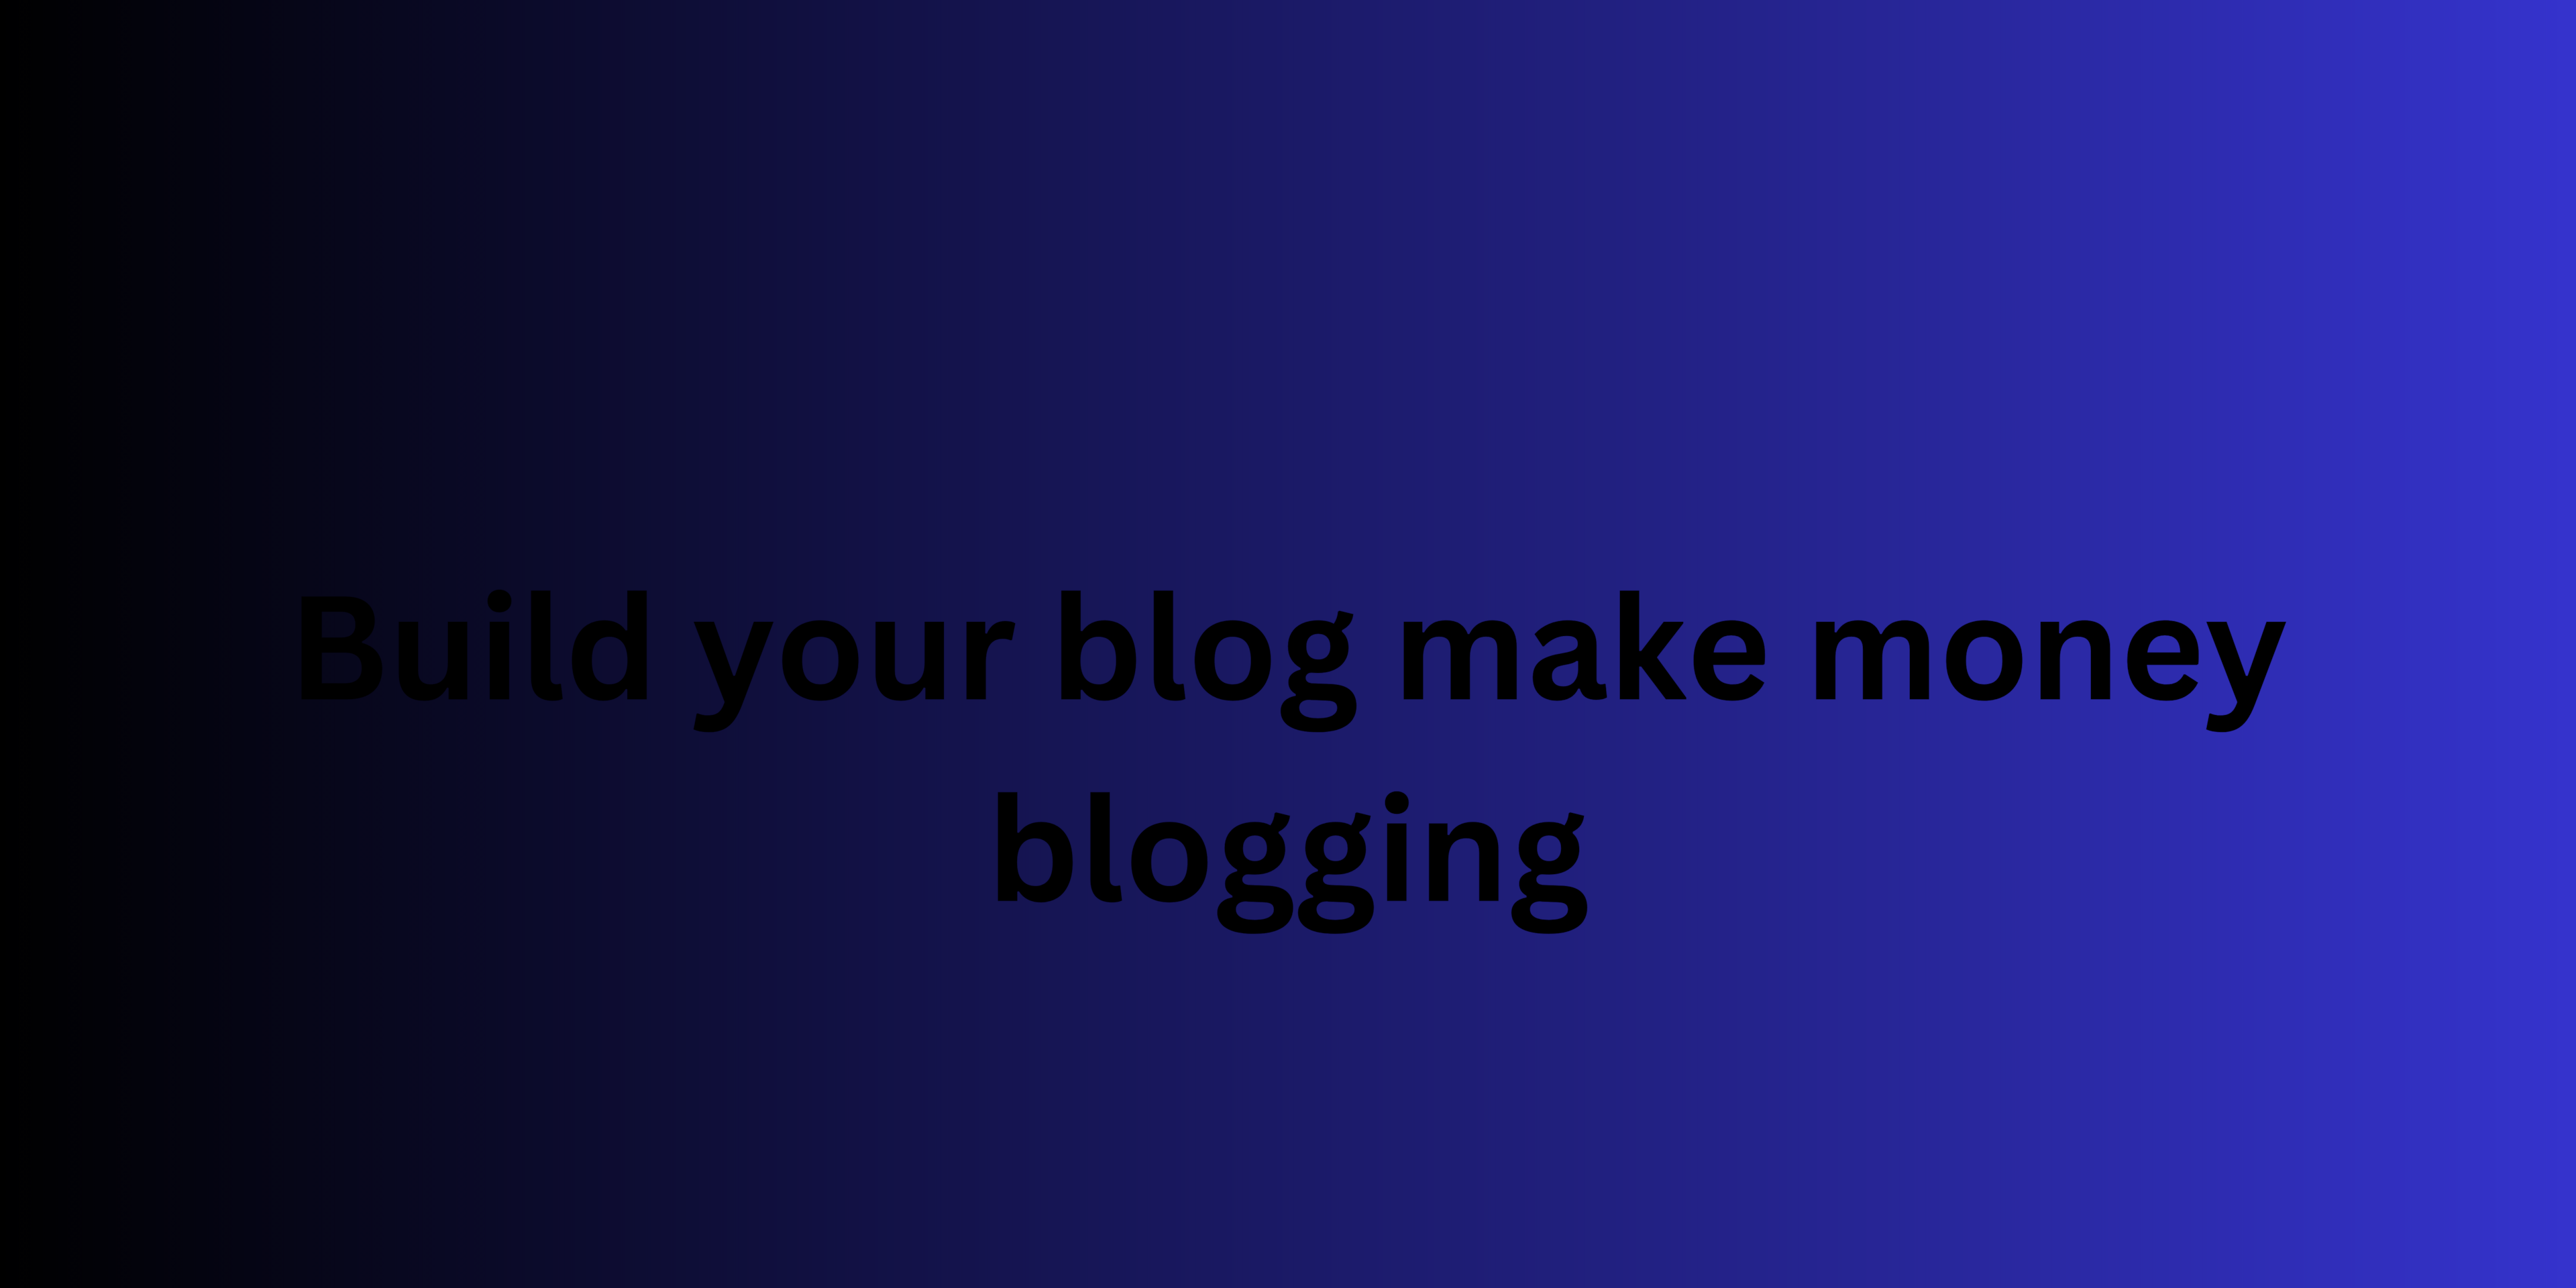 Build your blog make money blogging